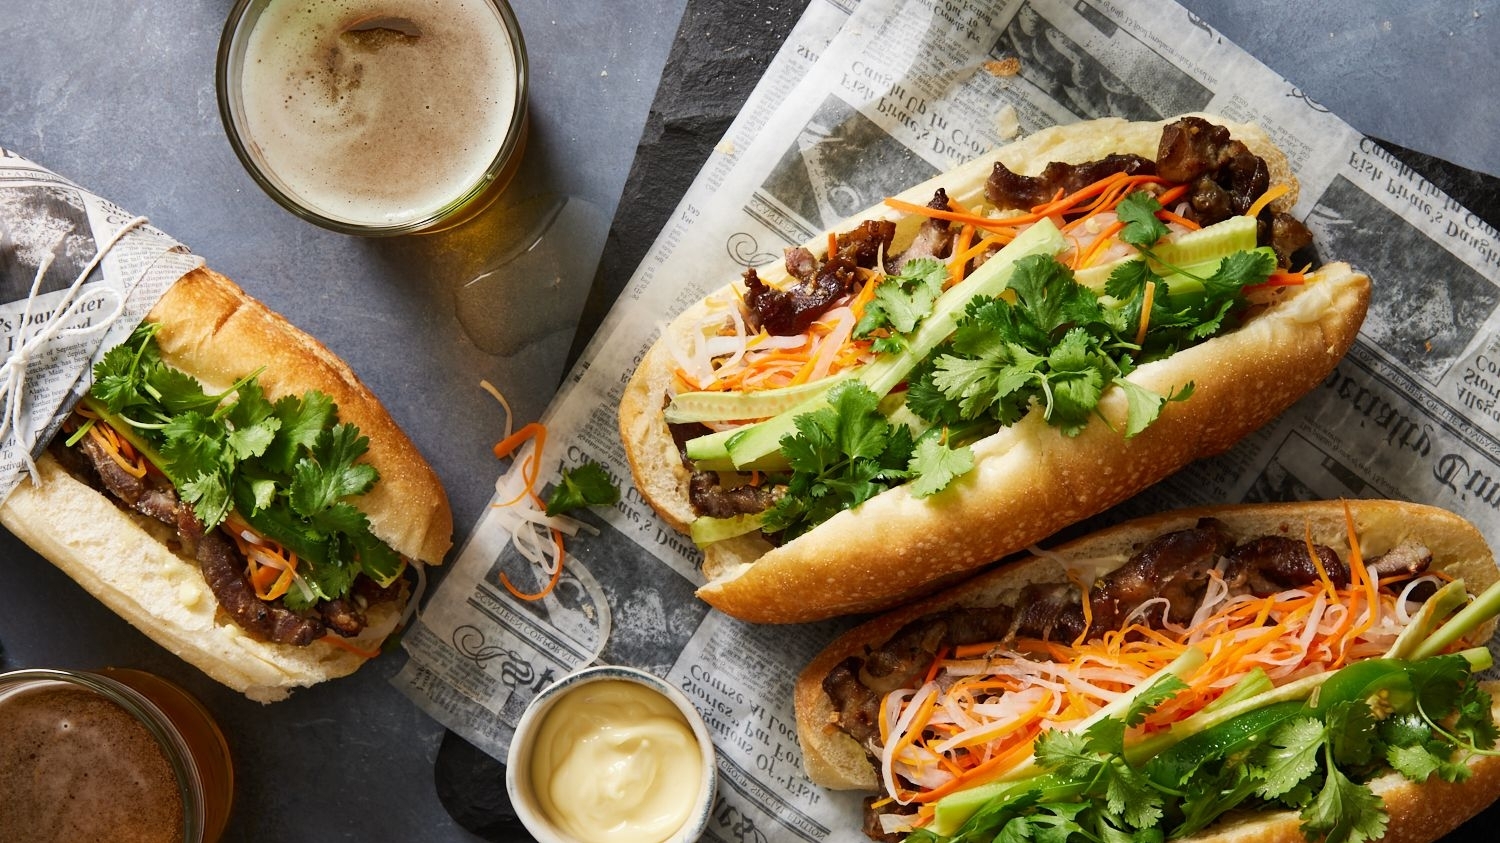 越南面包被列入全球50大街头美食榜单